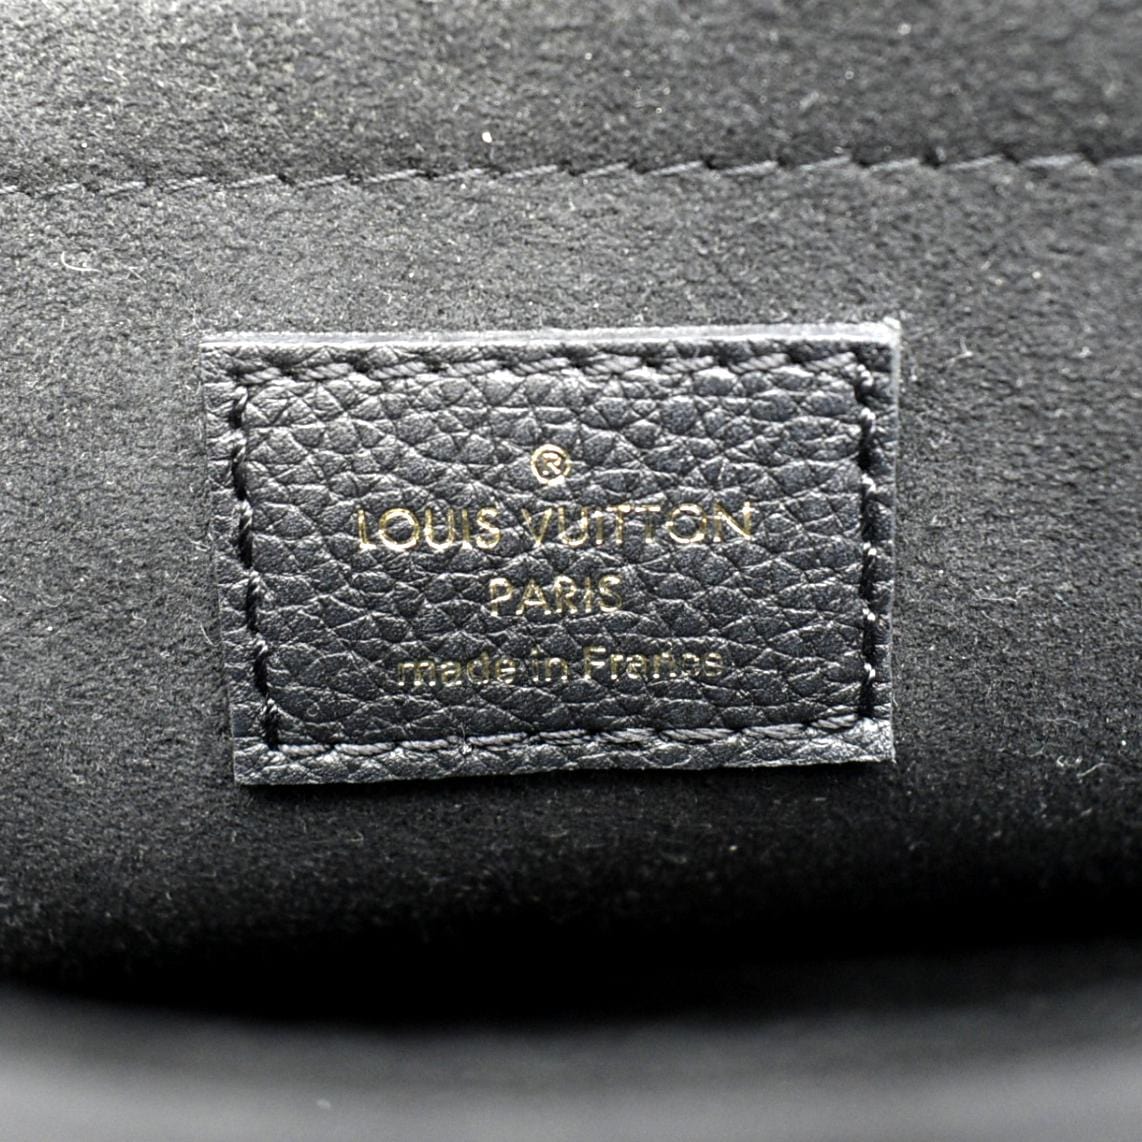 Louis Vuitton White Leather Monochrome Lockme Tote PM